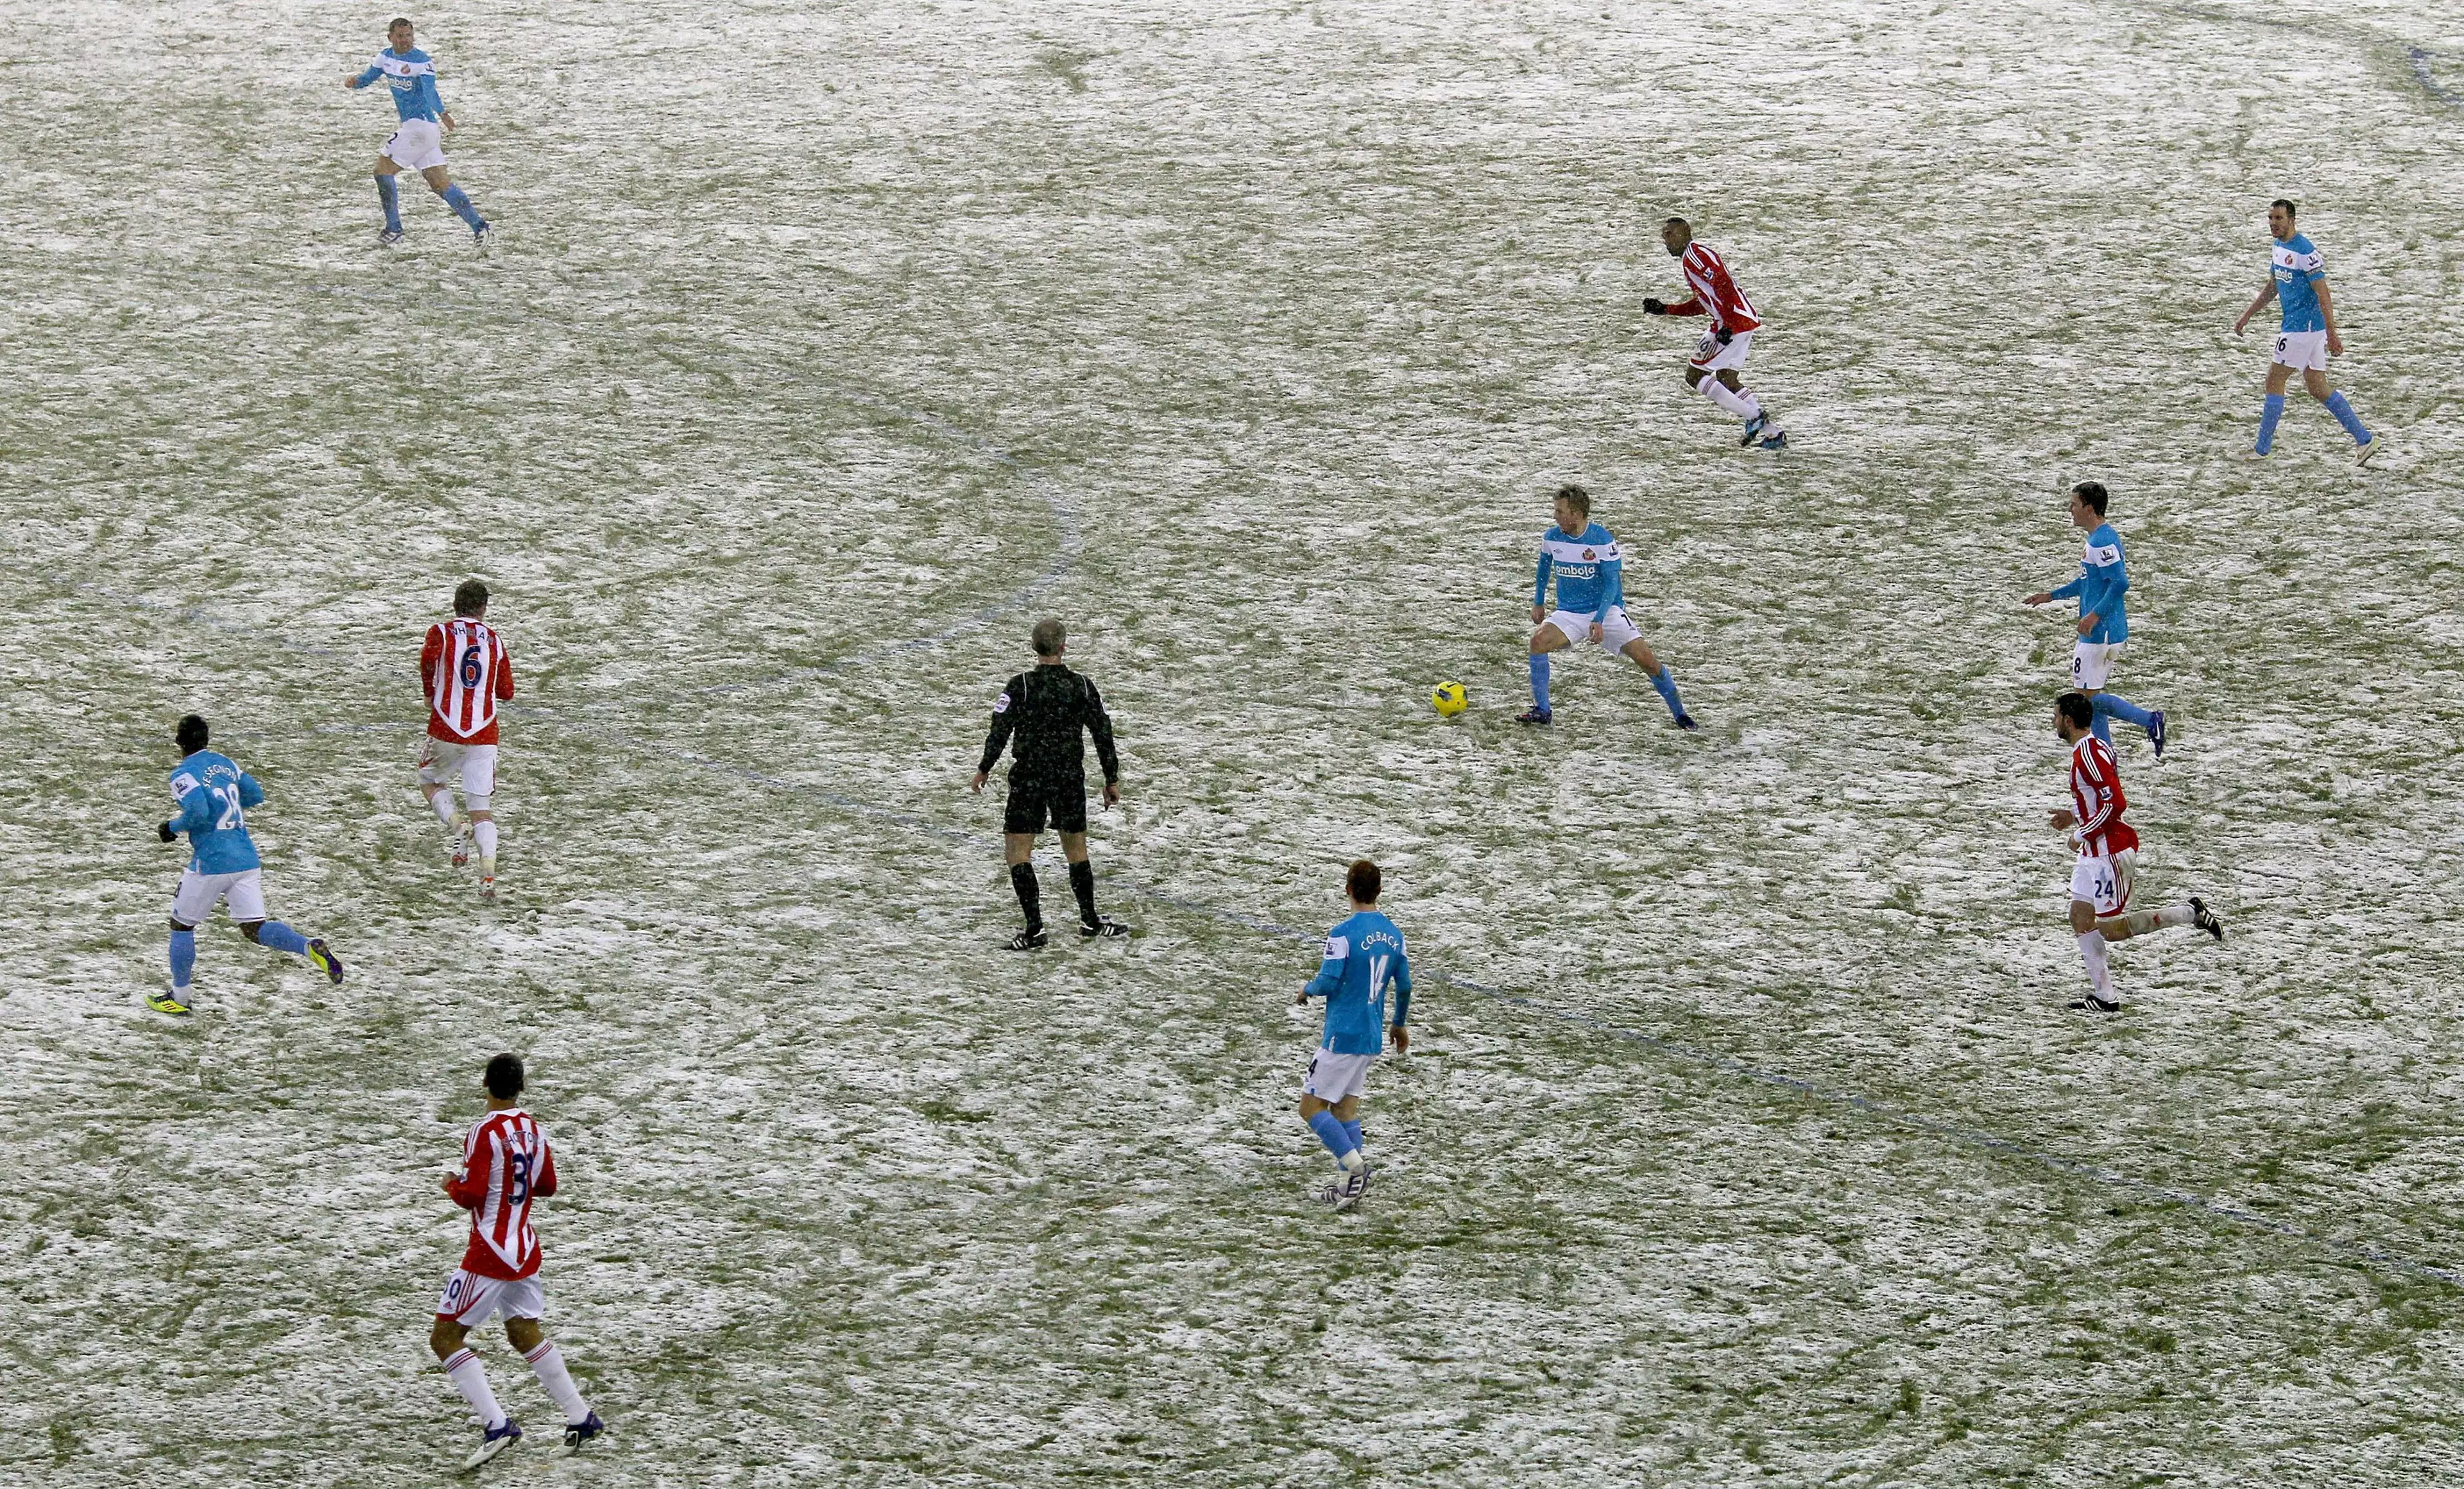 A Premier League fixture in the snow.